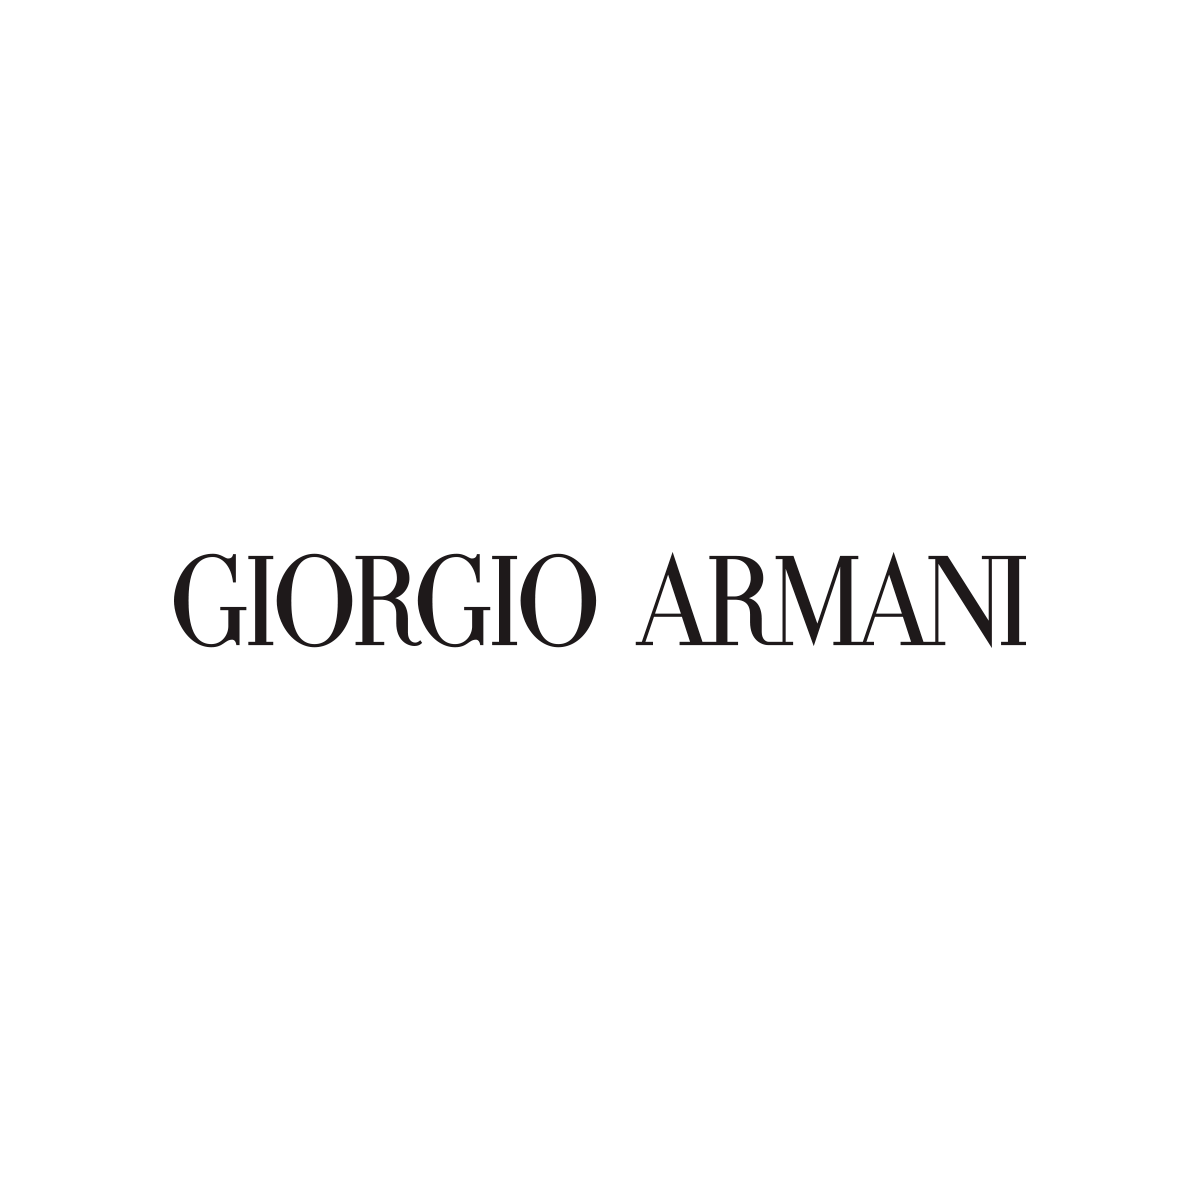 Giorgio Armani in München - Logo